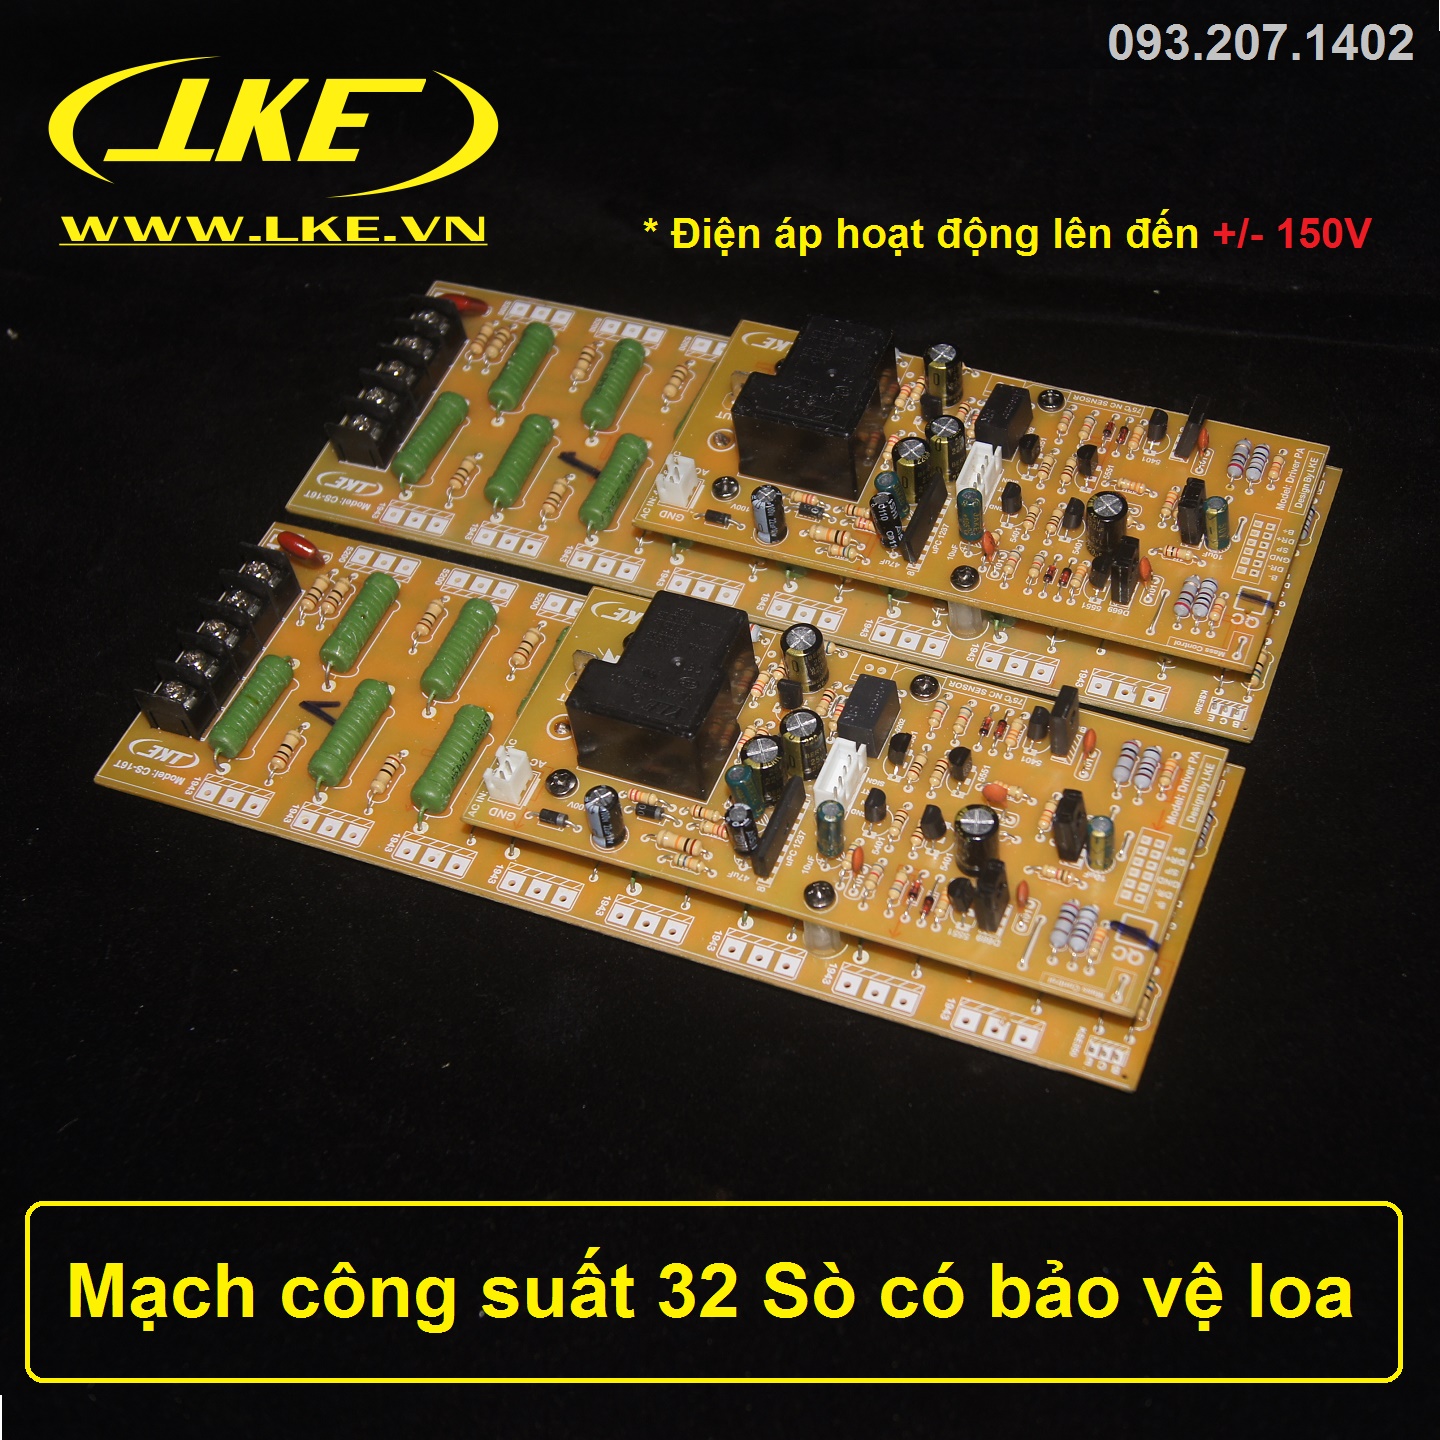 mạch công suất 32 sò tích hợp bảo vệ loa LKE